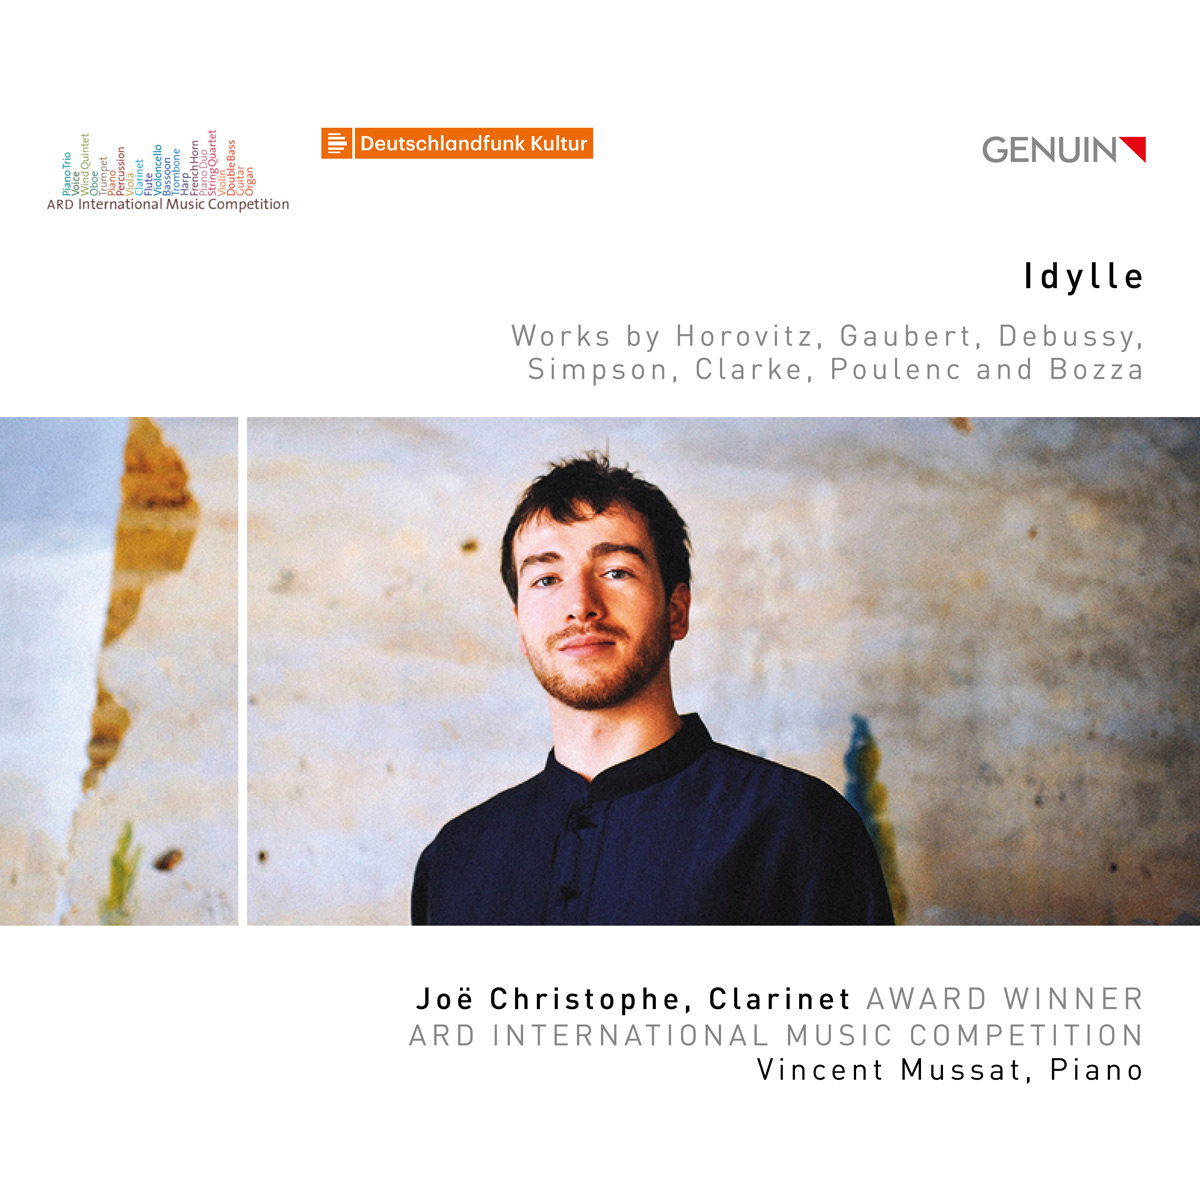 CD album cover 'Idylle' (GEN 21721) with Joë Christophe, Vincent Mussat